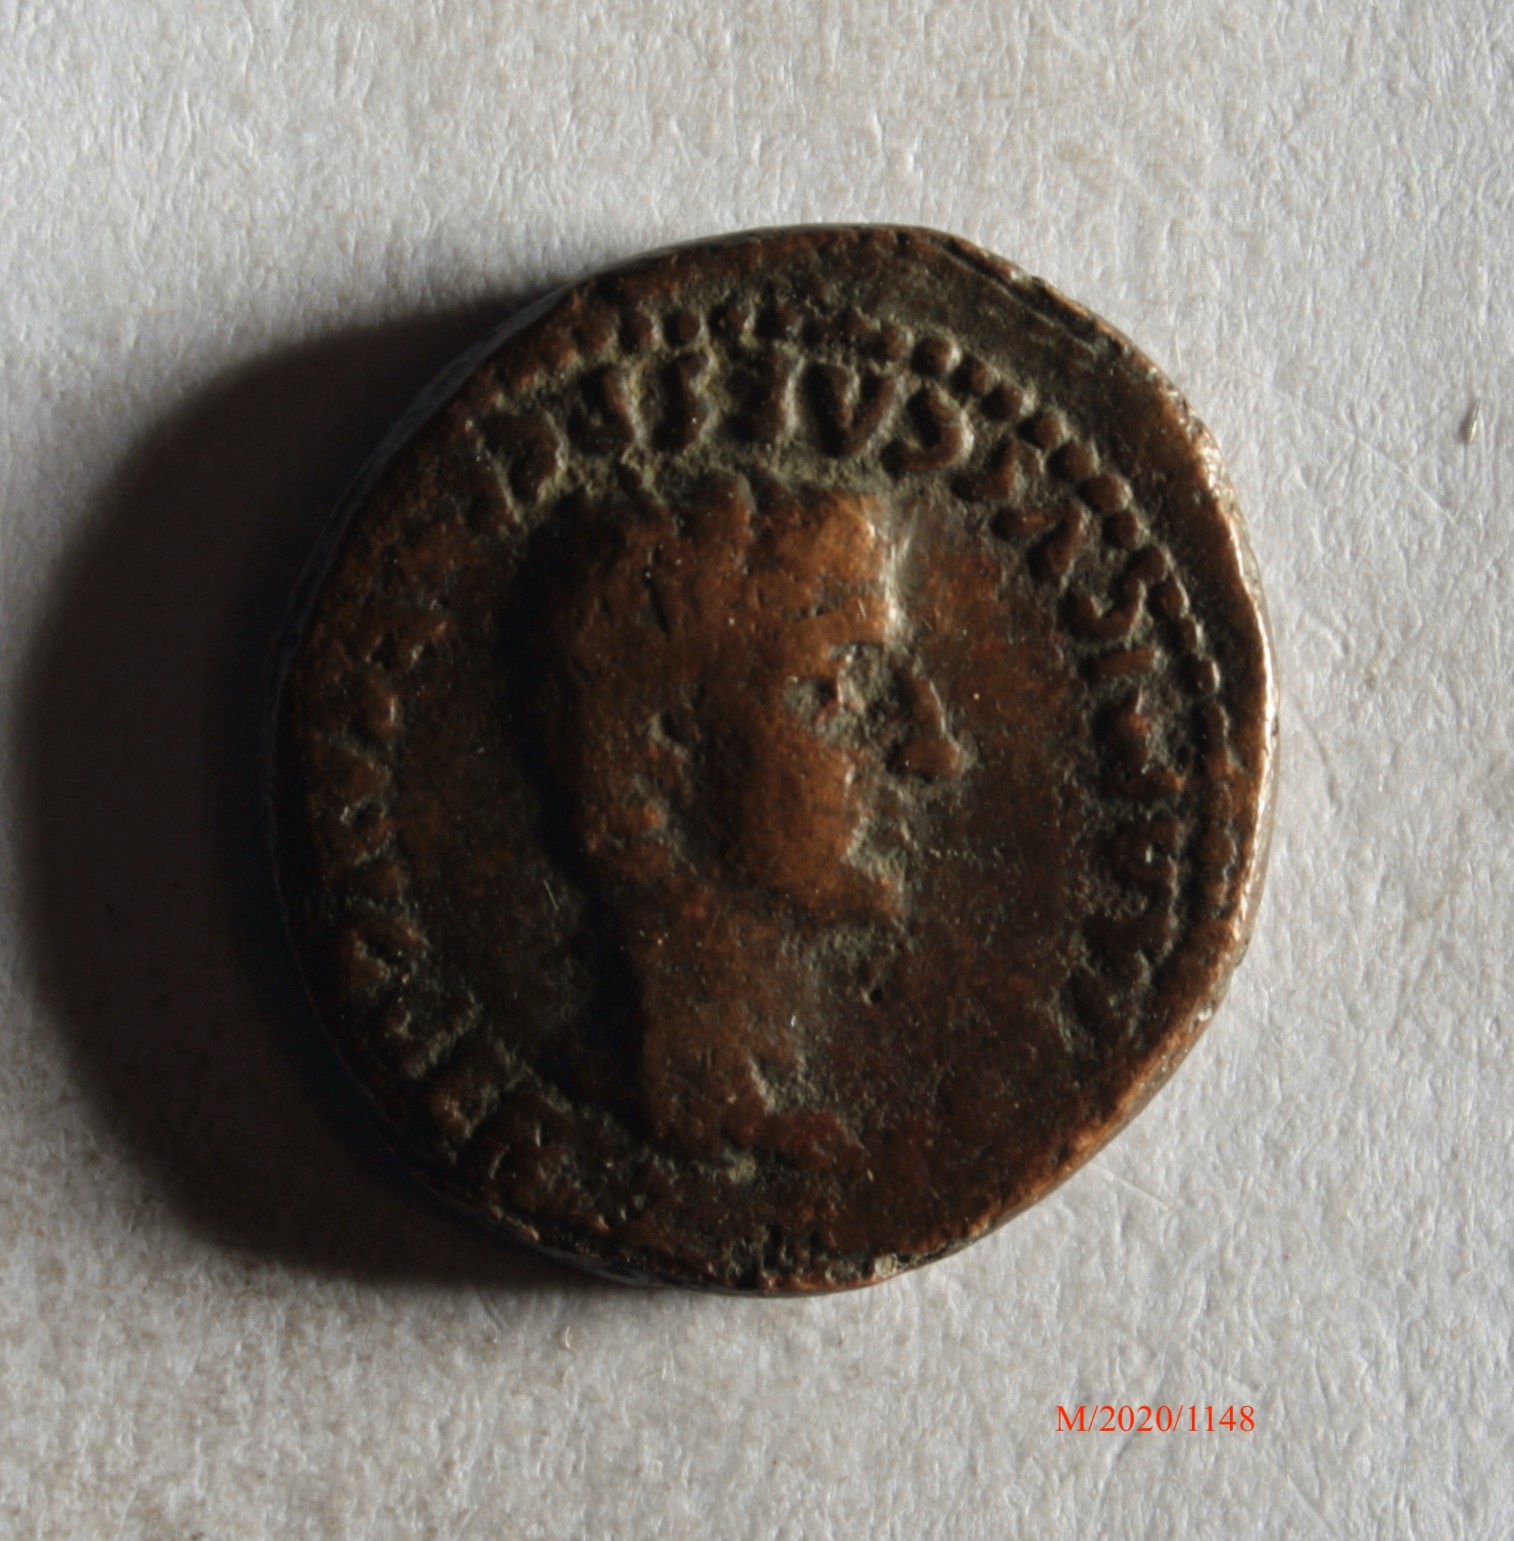 Römische Münze, Nominal Denar, Prägeherr unbekannt, f. "Germanicus", Prägeort nicht bestimmbar, Fälschung (Museumsgesellschaft Bad Dürkheim e.V. CC BY-NC-SA)